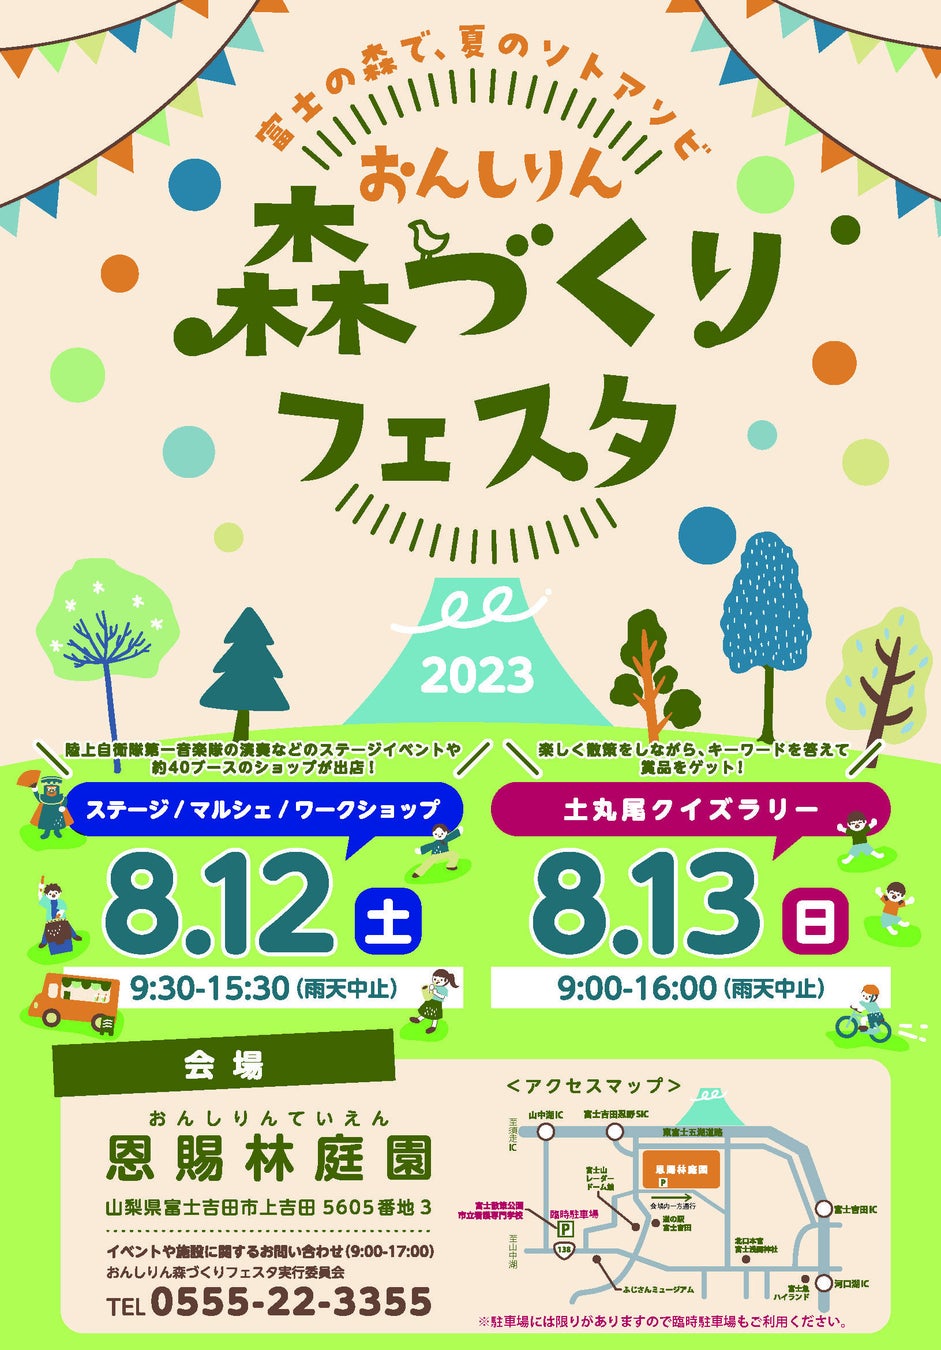 富士山麓の森と外遊びで、夏休みの思い出を。「2023おんしりん 森づくりフェスタ」8月12日（土）、13日（日）の二日間、恩賜林庭園にて開催のサブ画像2